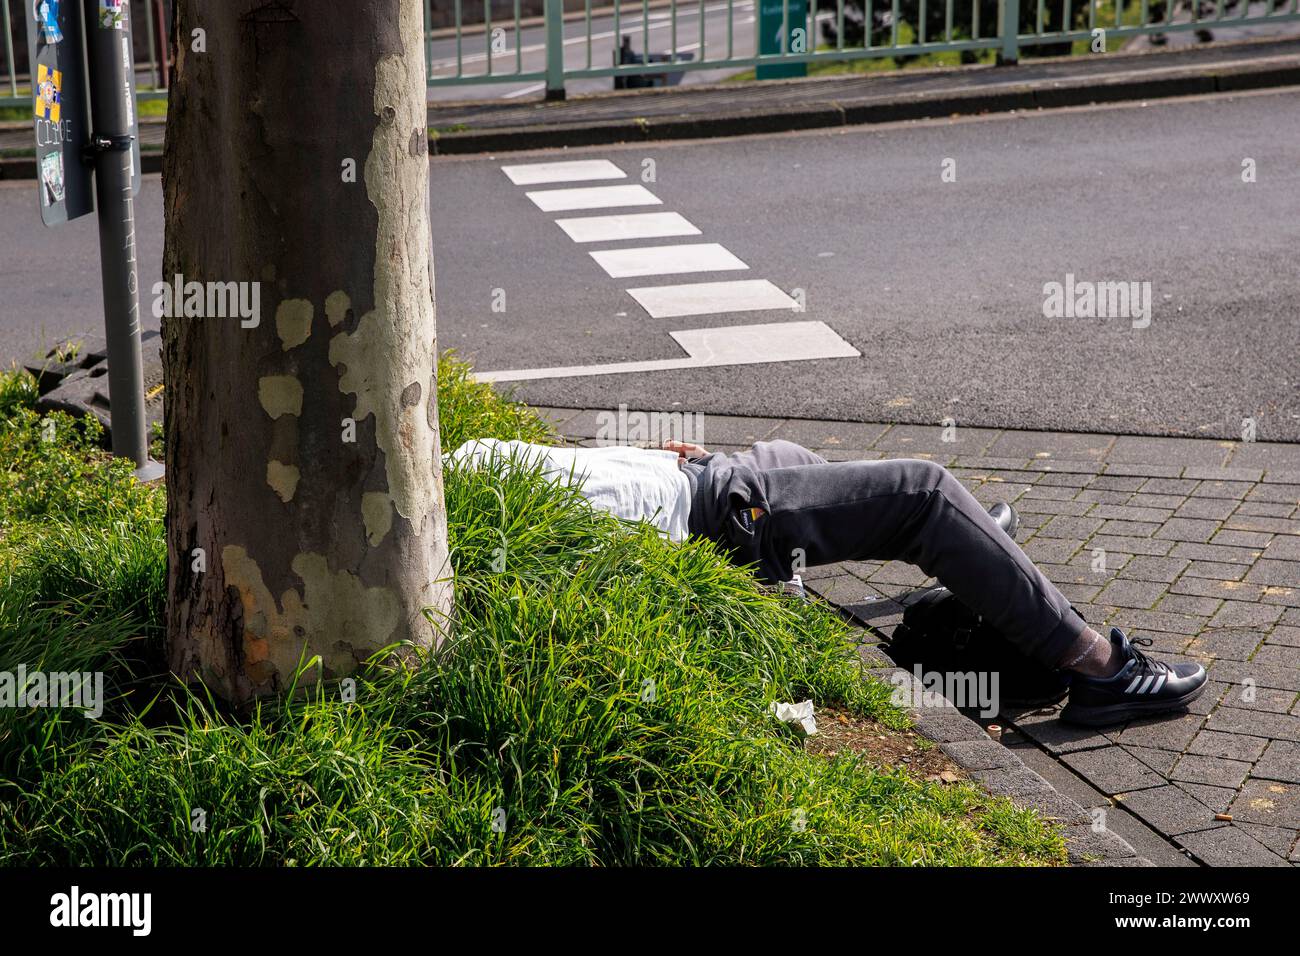 Un homme est allongé sur une bande de verdure dans la rue Turiner, Cologne, Allemagne. ein Mann liegt auf einem Gruenstreifen an der Turiner Strasse, Koeln, Deutschla Banque D'Images